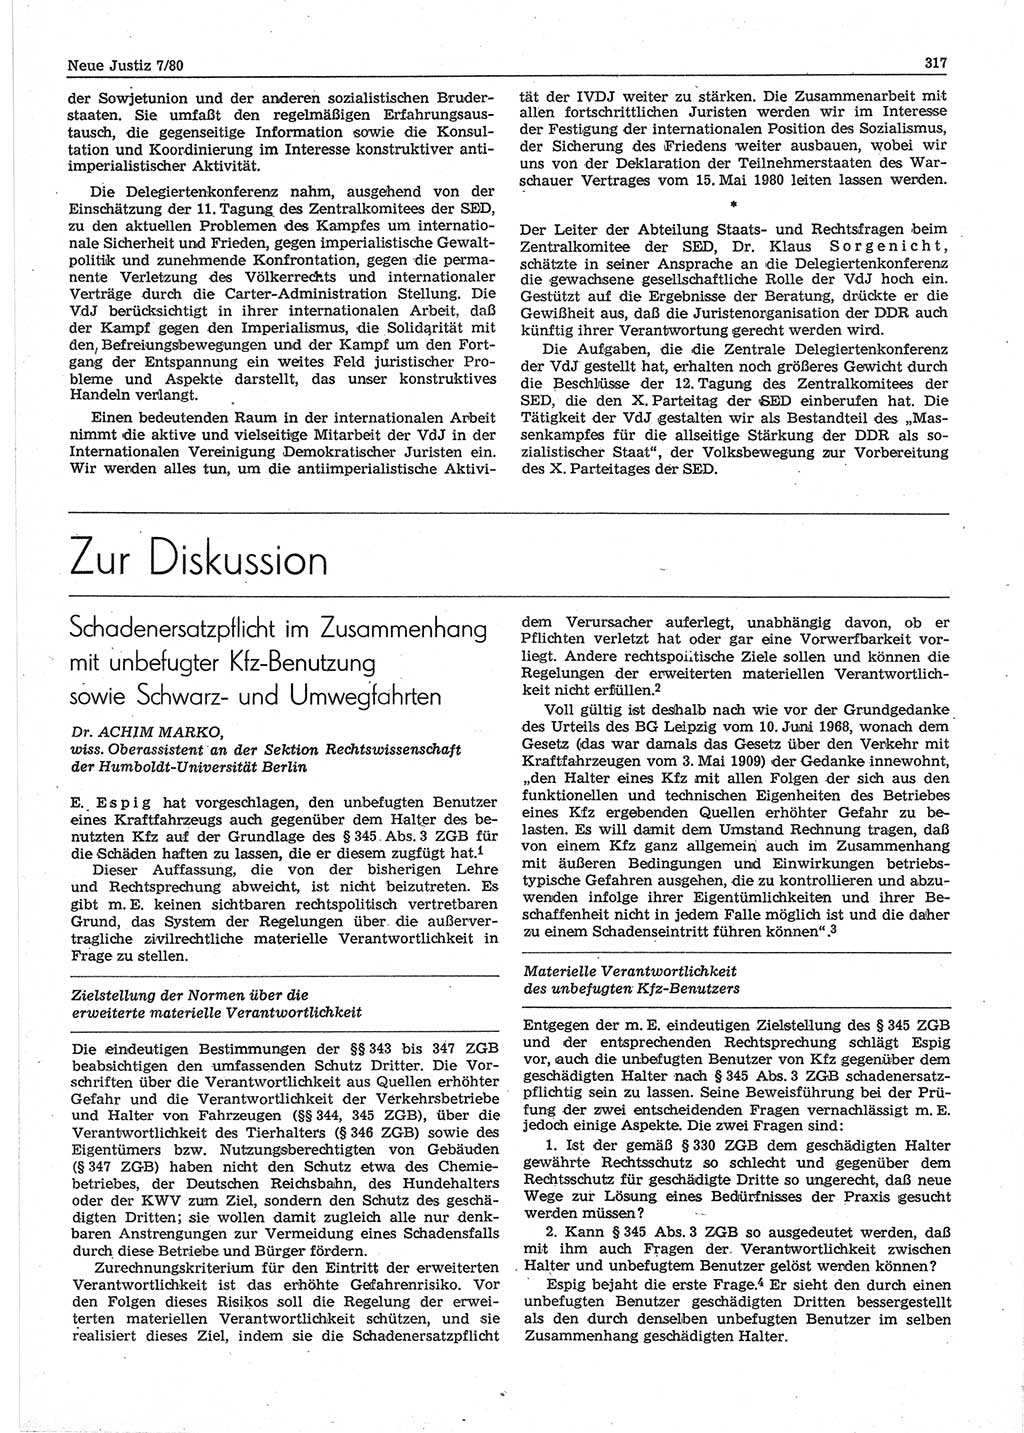 Neue Justiz (NJ), Zeitschrift für sozialistisches Recht und Gesetzlichkeit [Deutsche Demokratische Republik (DDR)], 34. Jahrgang 1980, Seite 317 (NJ DDR 1980, S. 317)